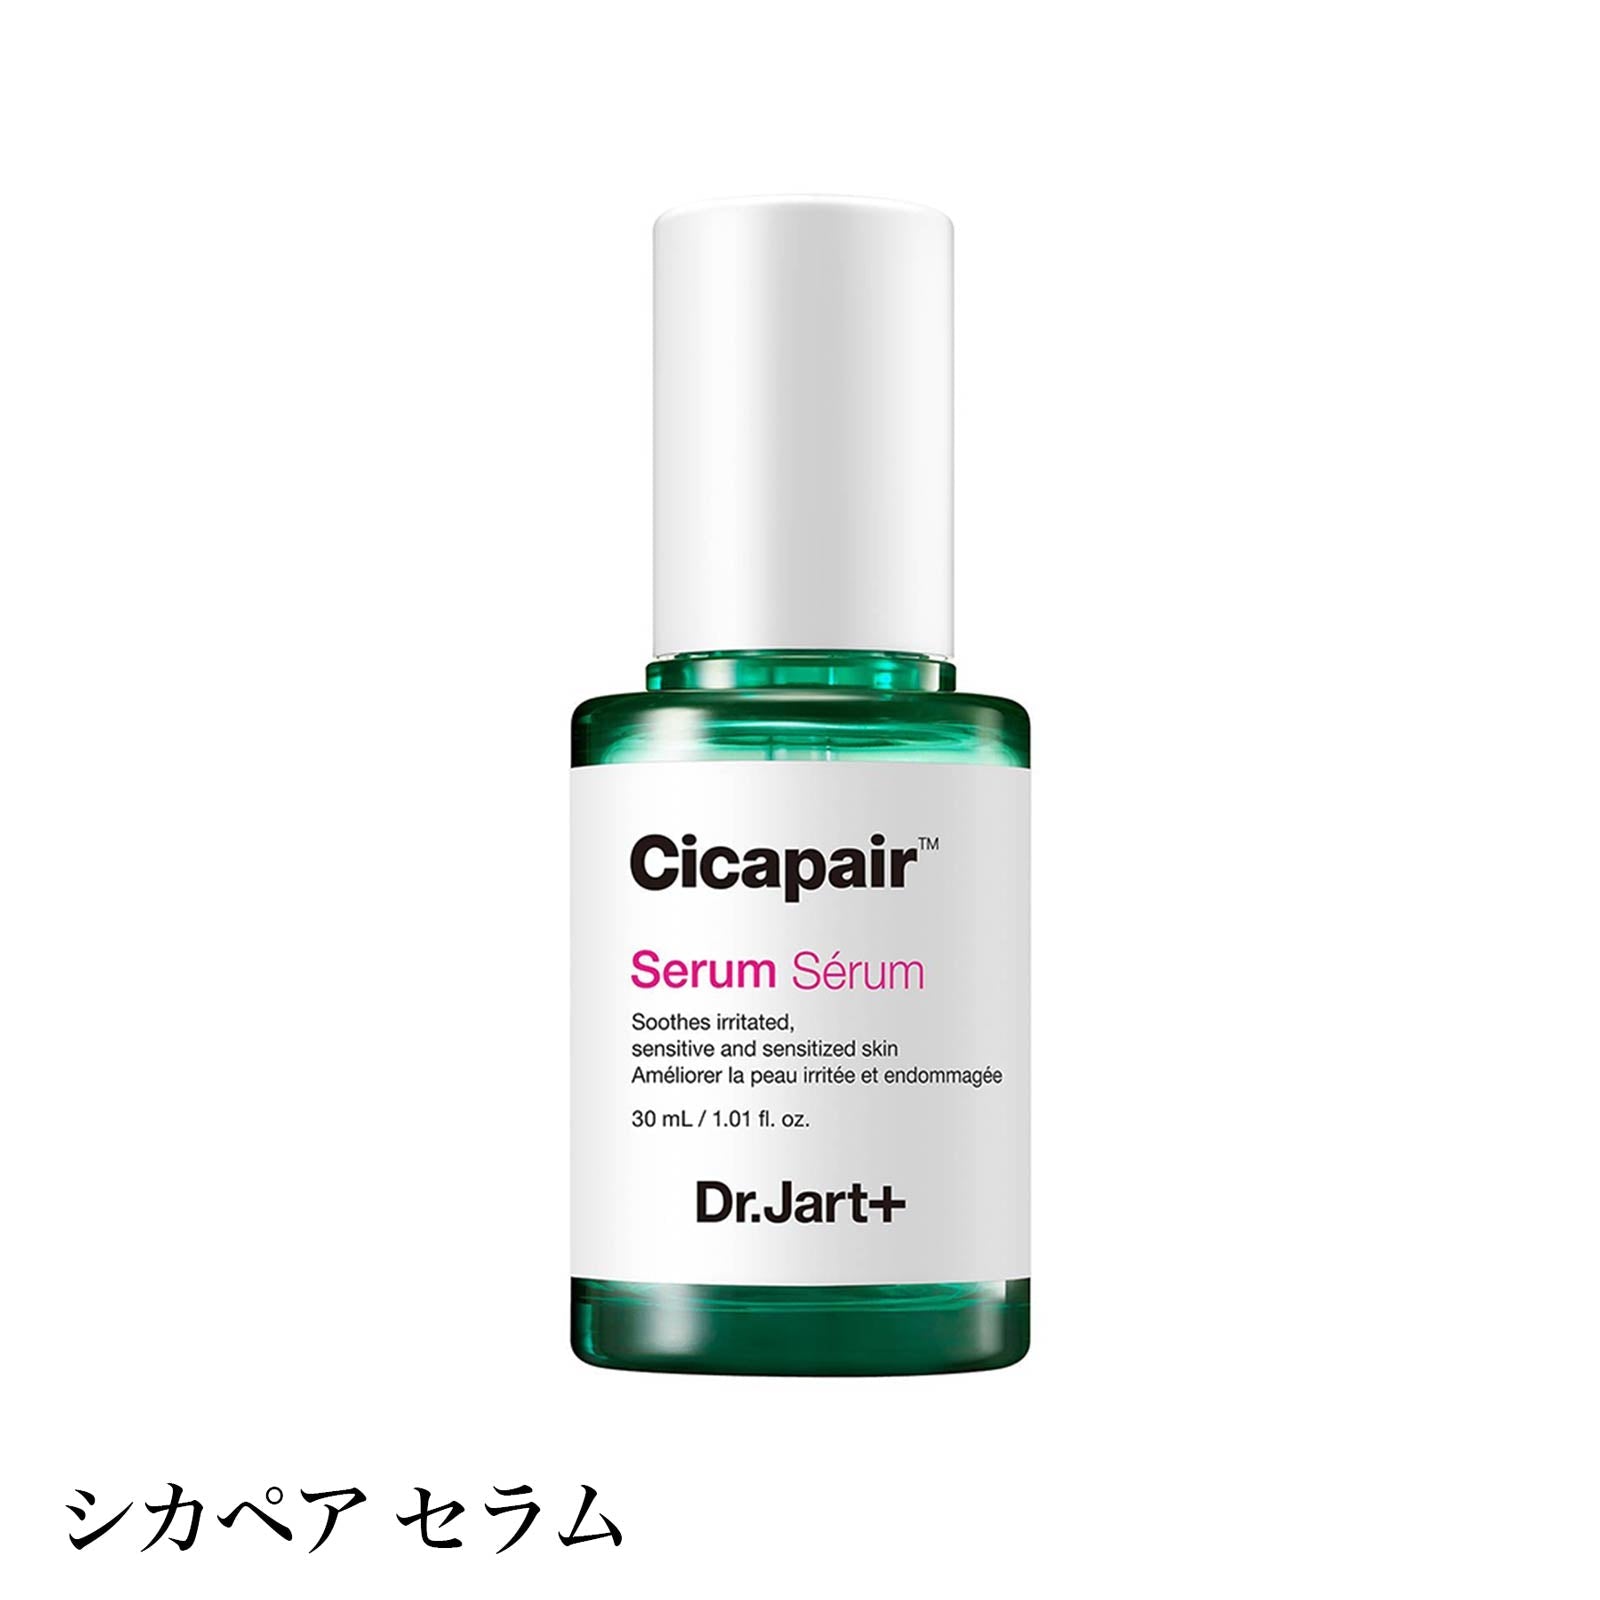 【美容液】Dr.Jart+ ドクタージャルト Cicapair Serum シカペア セラム